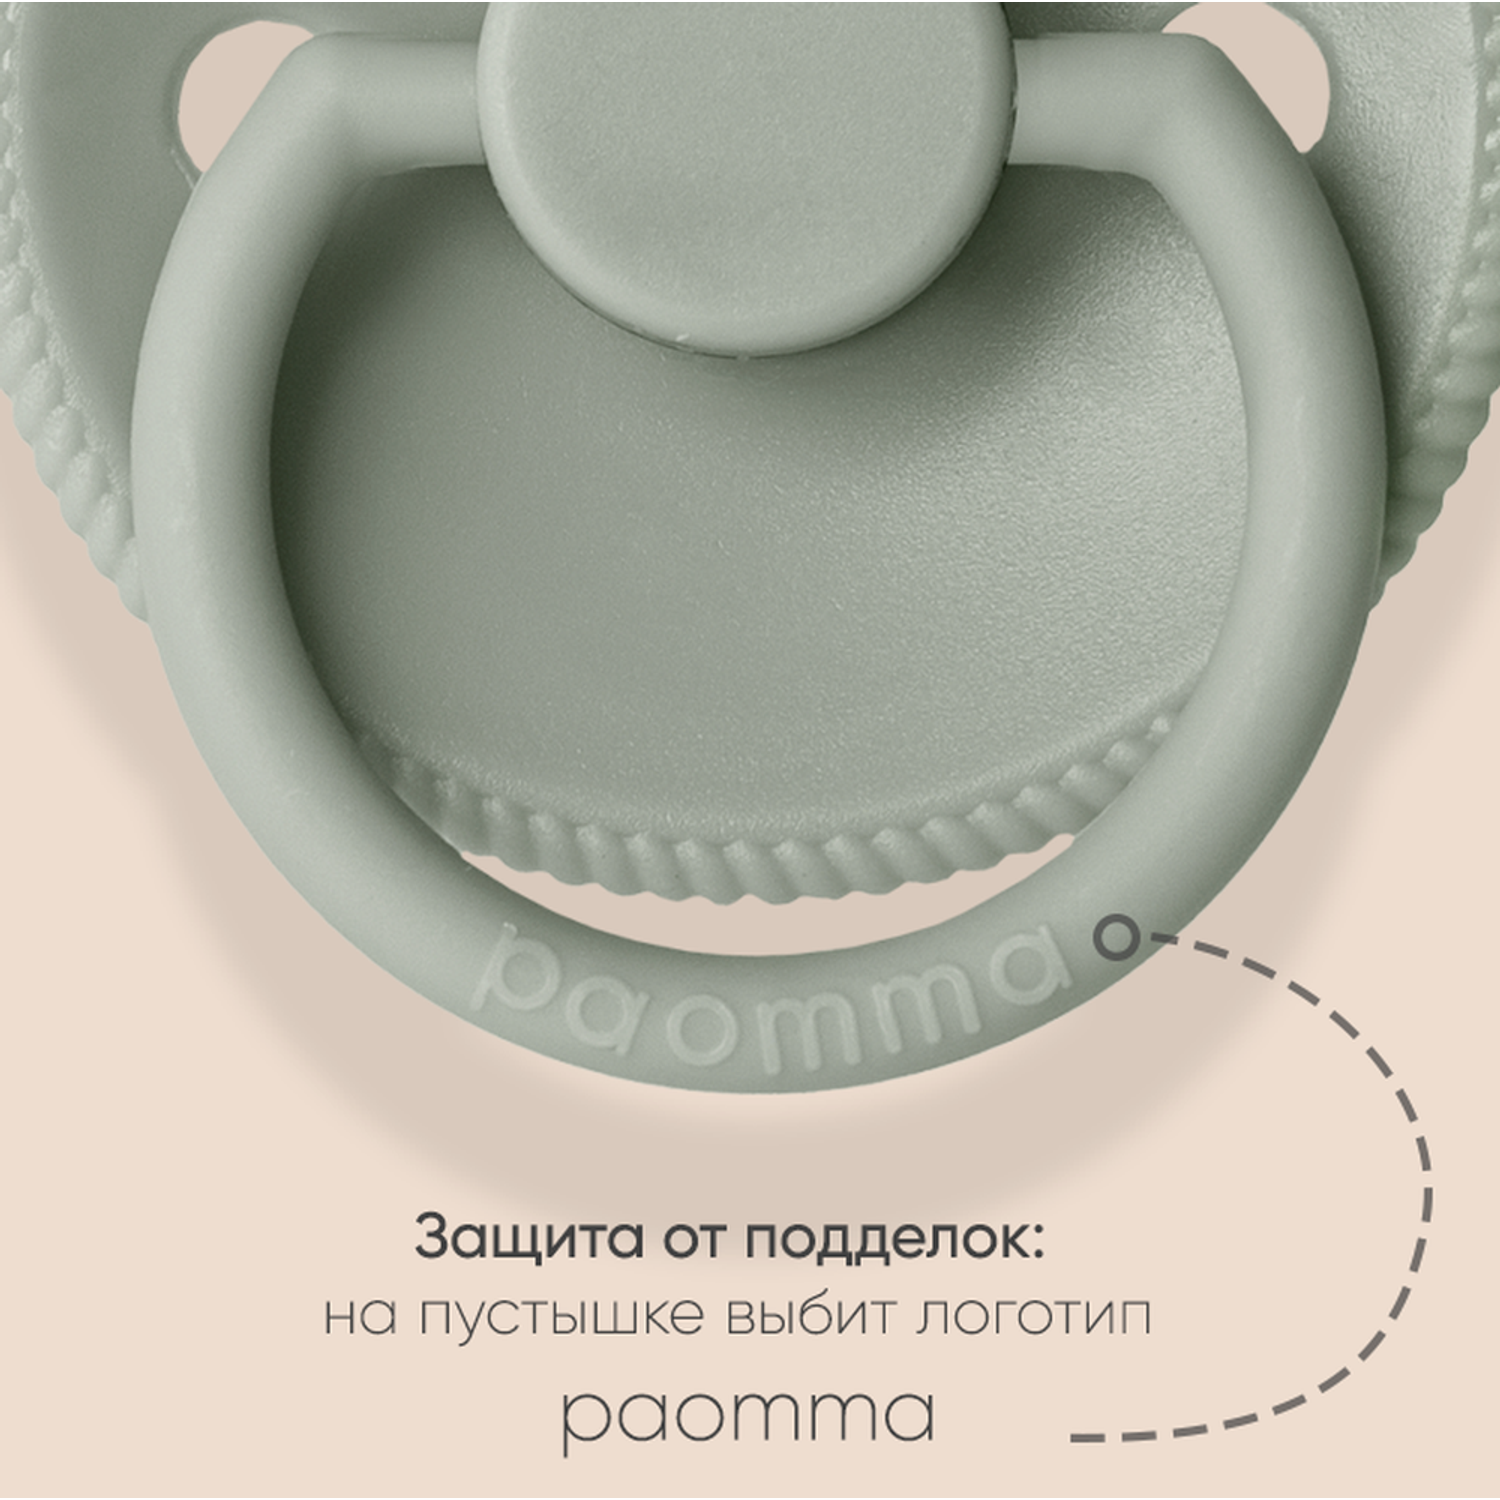 Соска-пустышка paomma классическая латексная 0-6 месяцев для новорожденных цвет Бежевый - фото 4